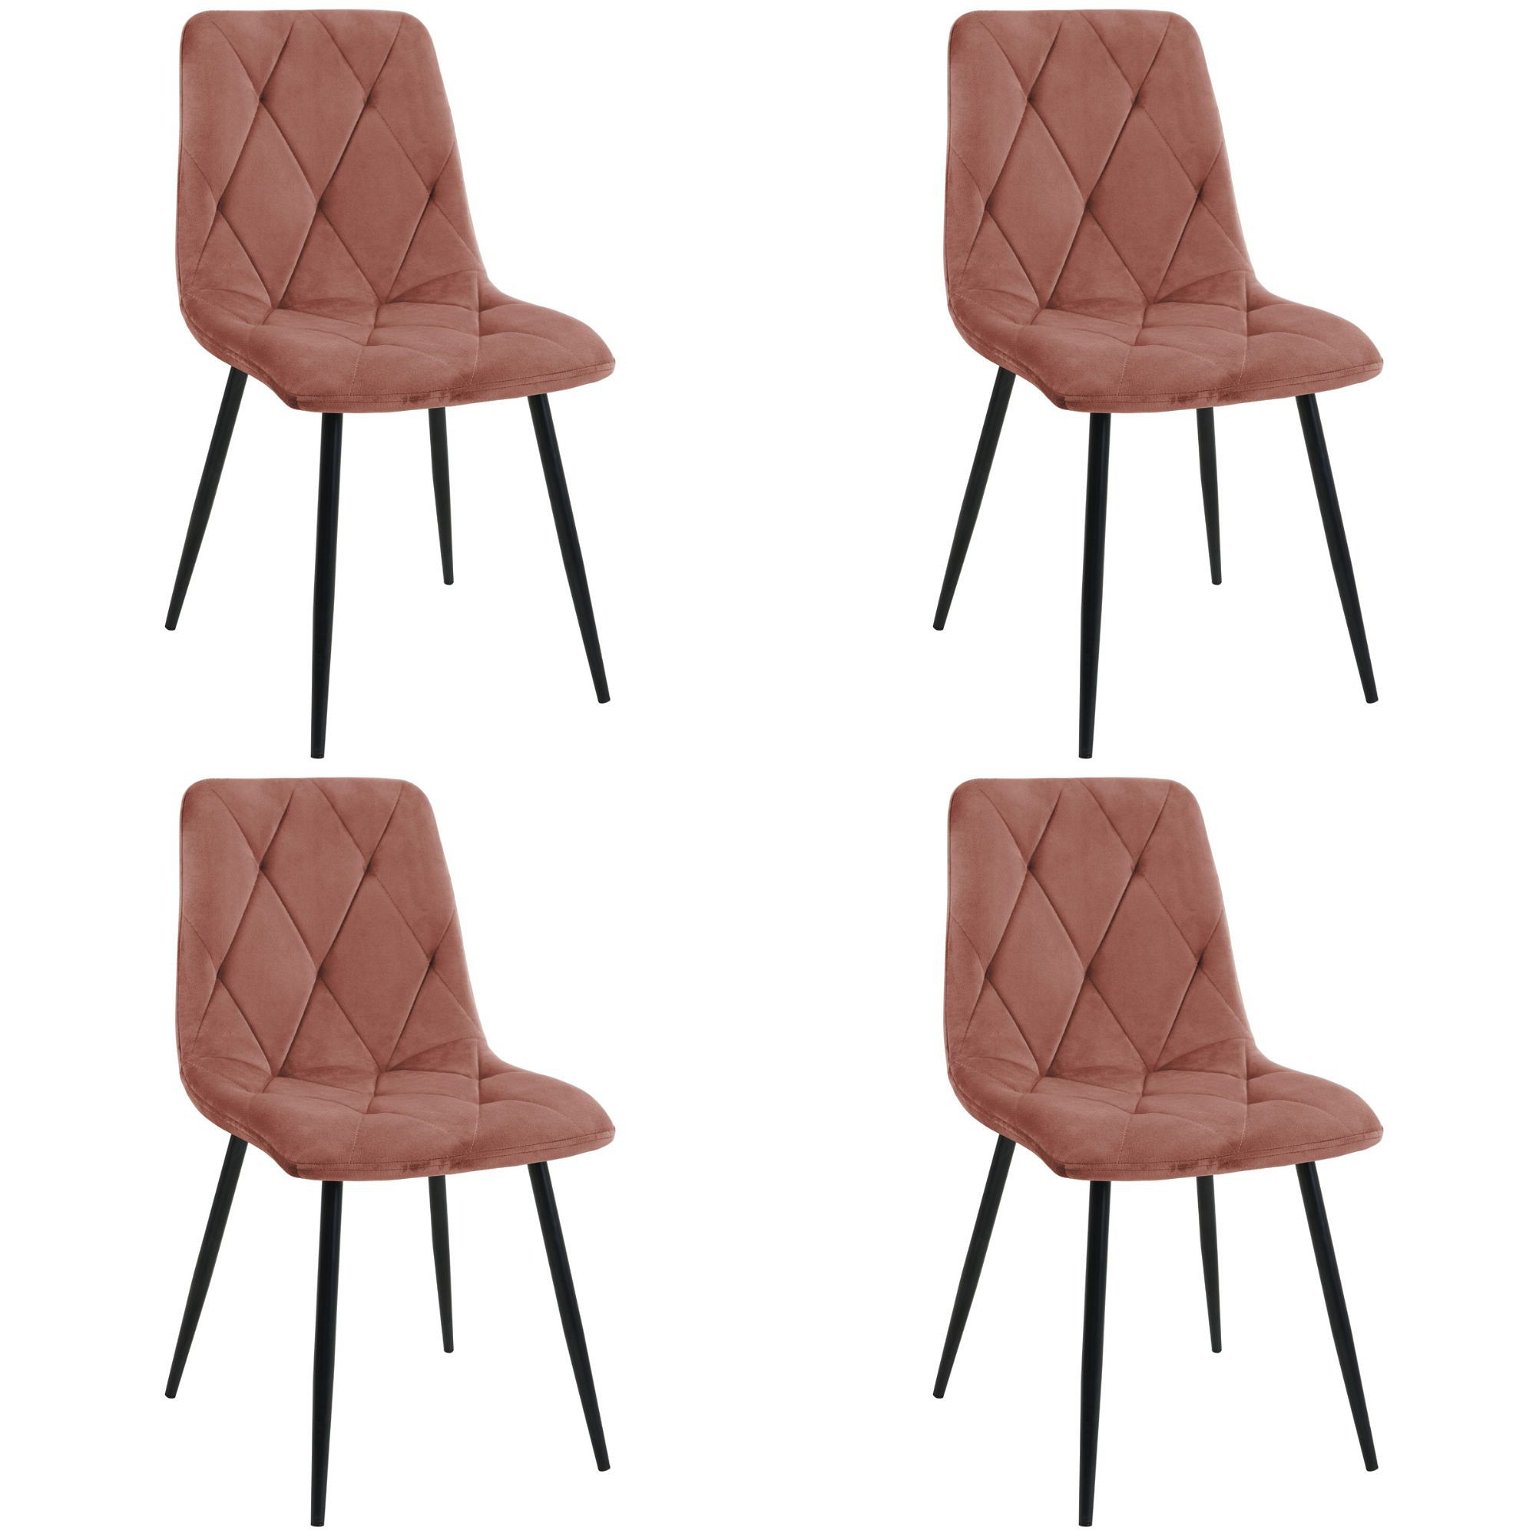 4-ių kėdžių komplektas SJ.3, rožinė